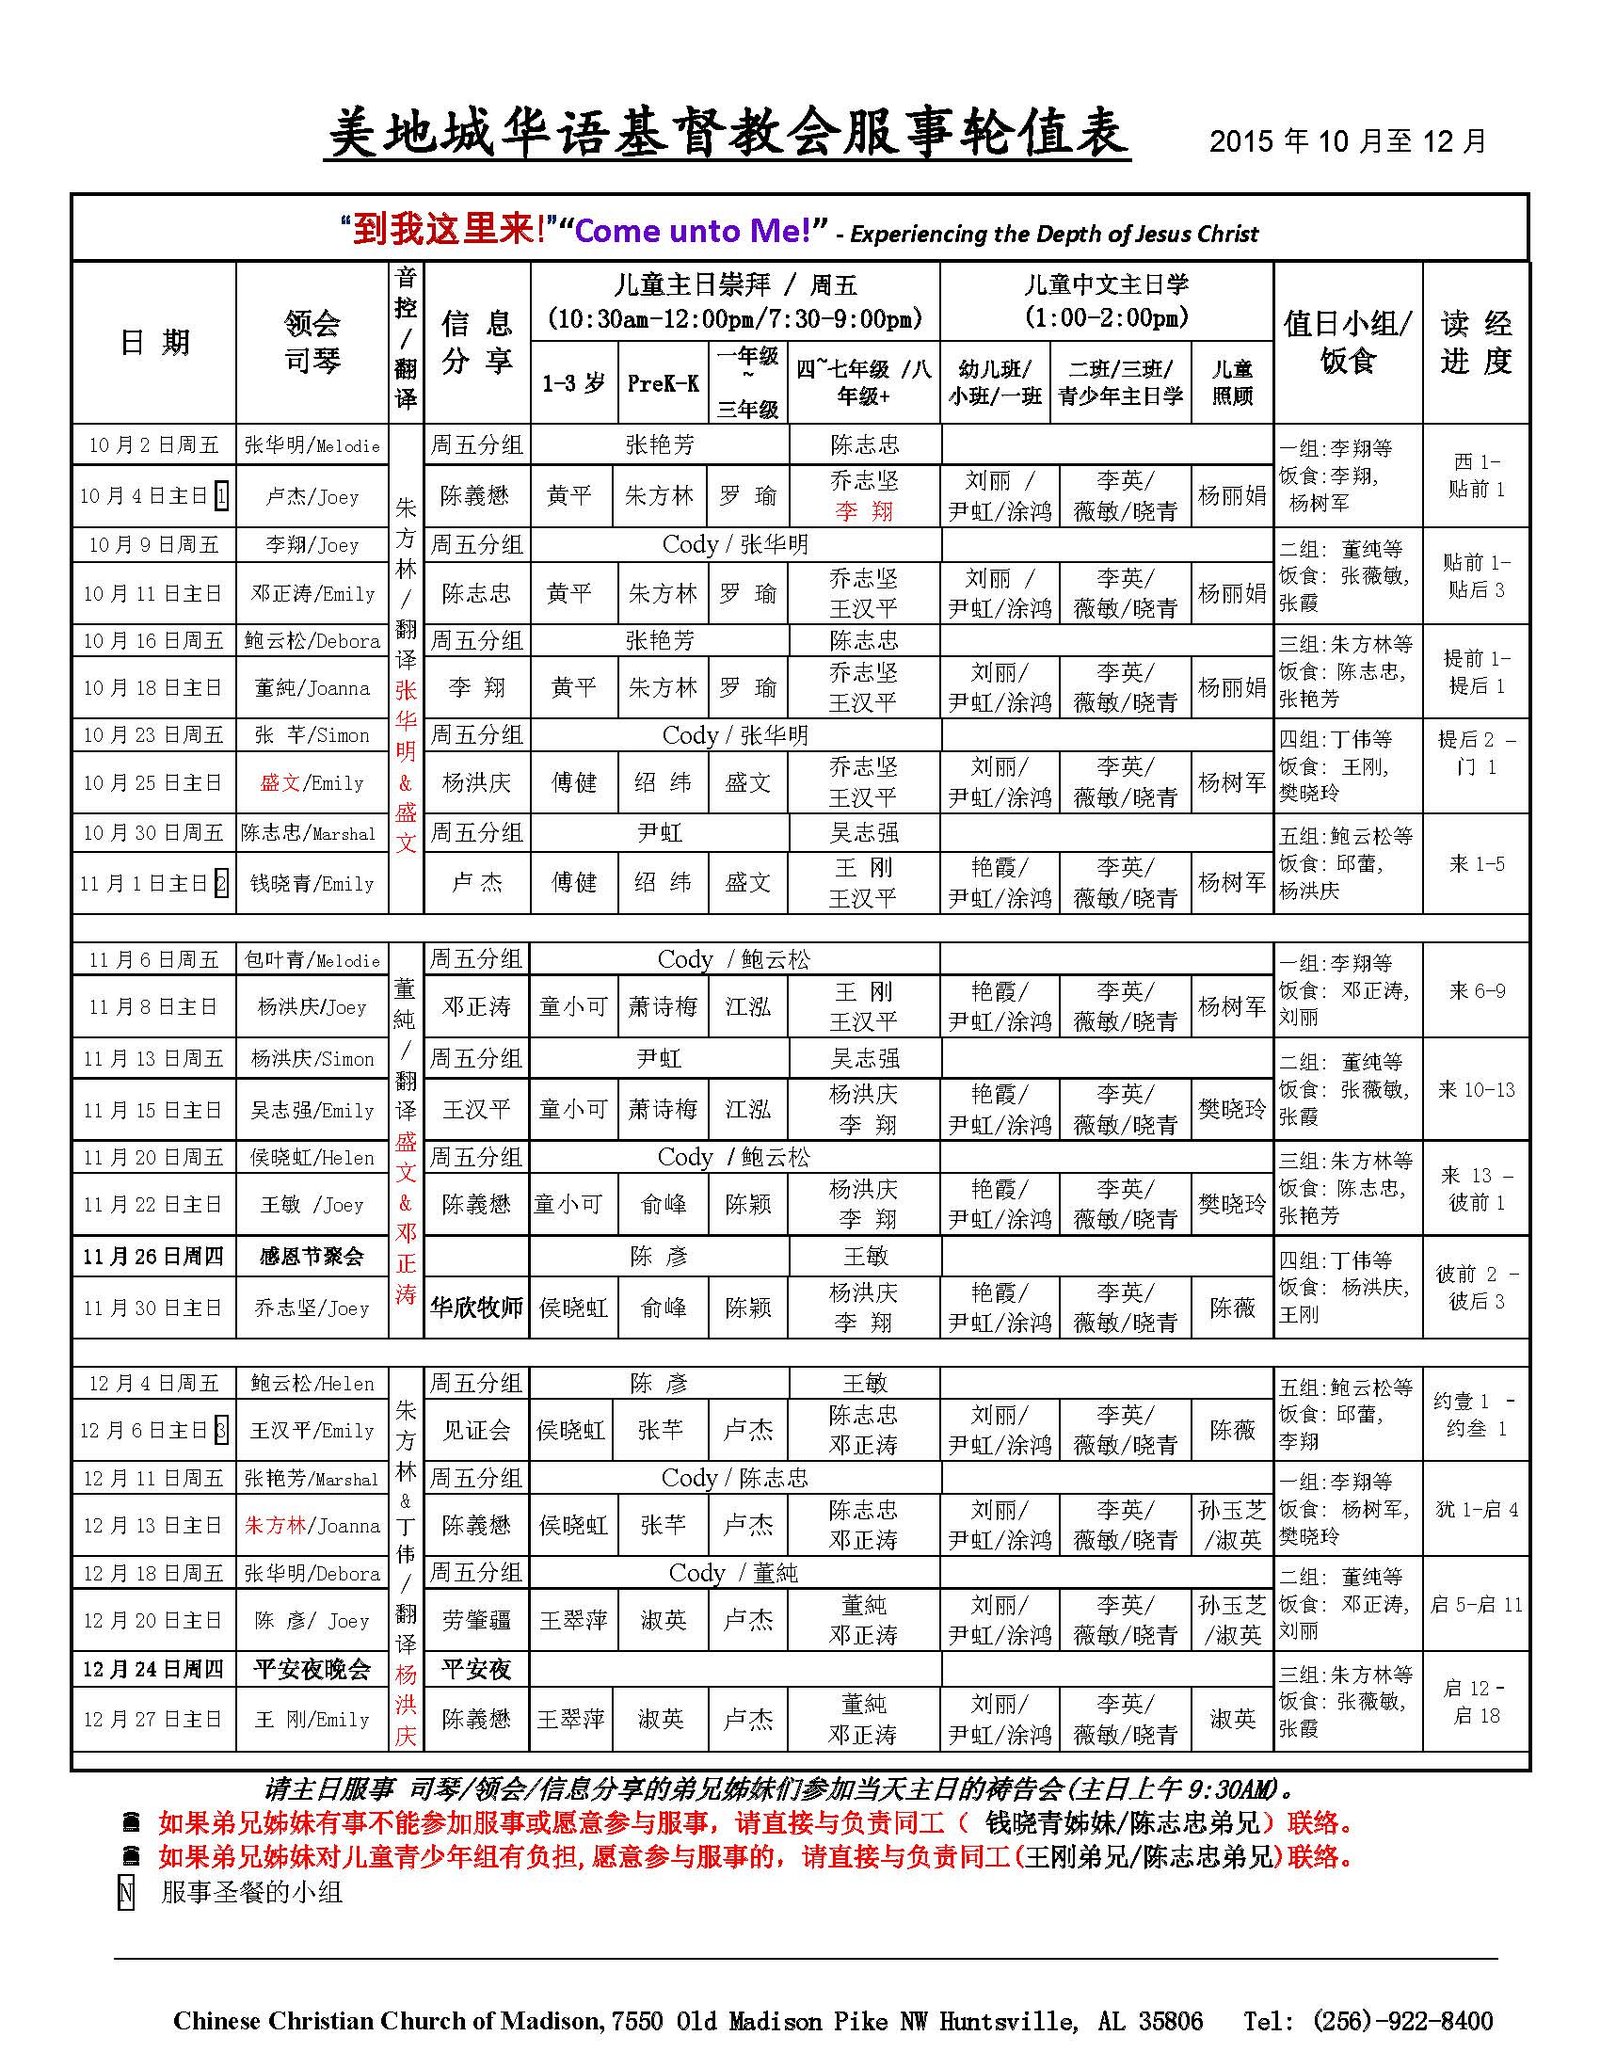 CCCM-Oct-Dec-2015-Schedule-V51.jpg